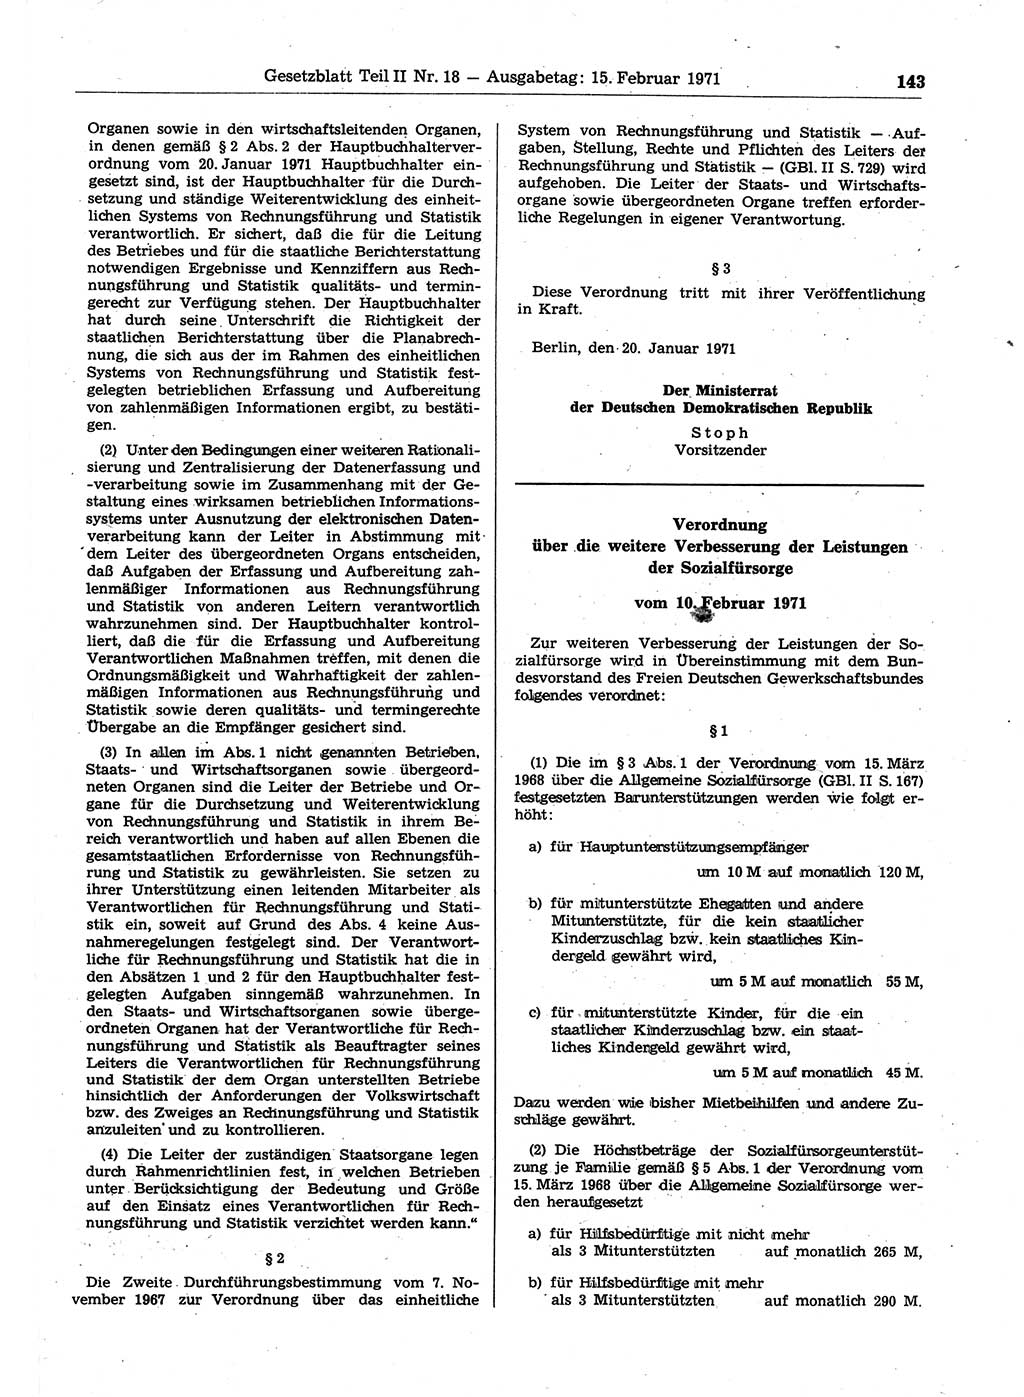 Gesetzblatt (GBl.) der Deutschen Demokratischen Republik (DDR) Teil ⅠⅠ 1971, Seite 143 (GBl. DDR ⅠⅠ 1971, S. 143)